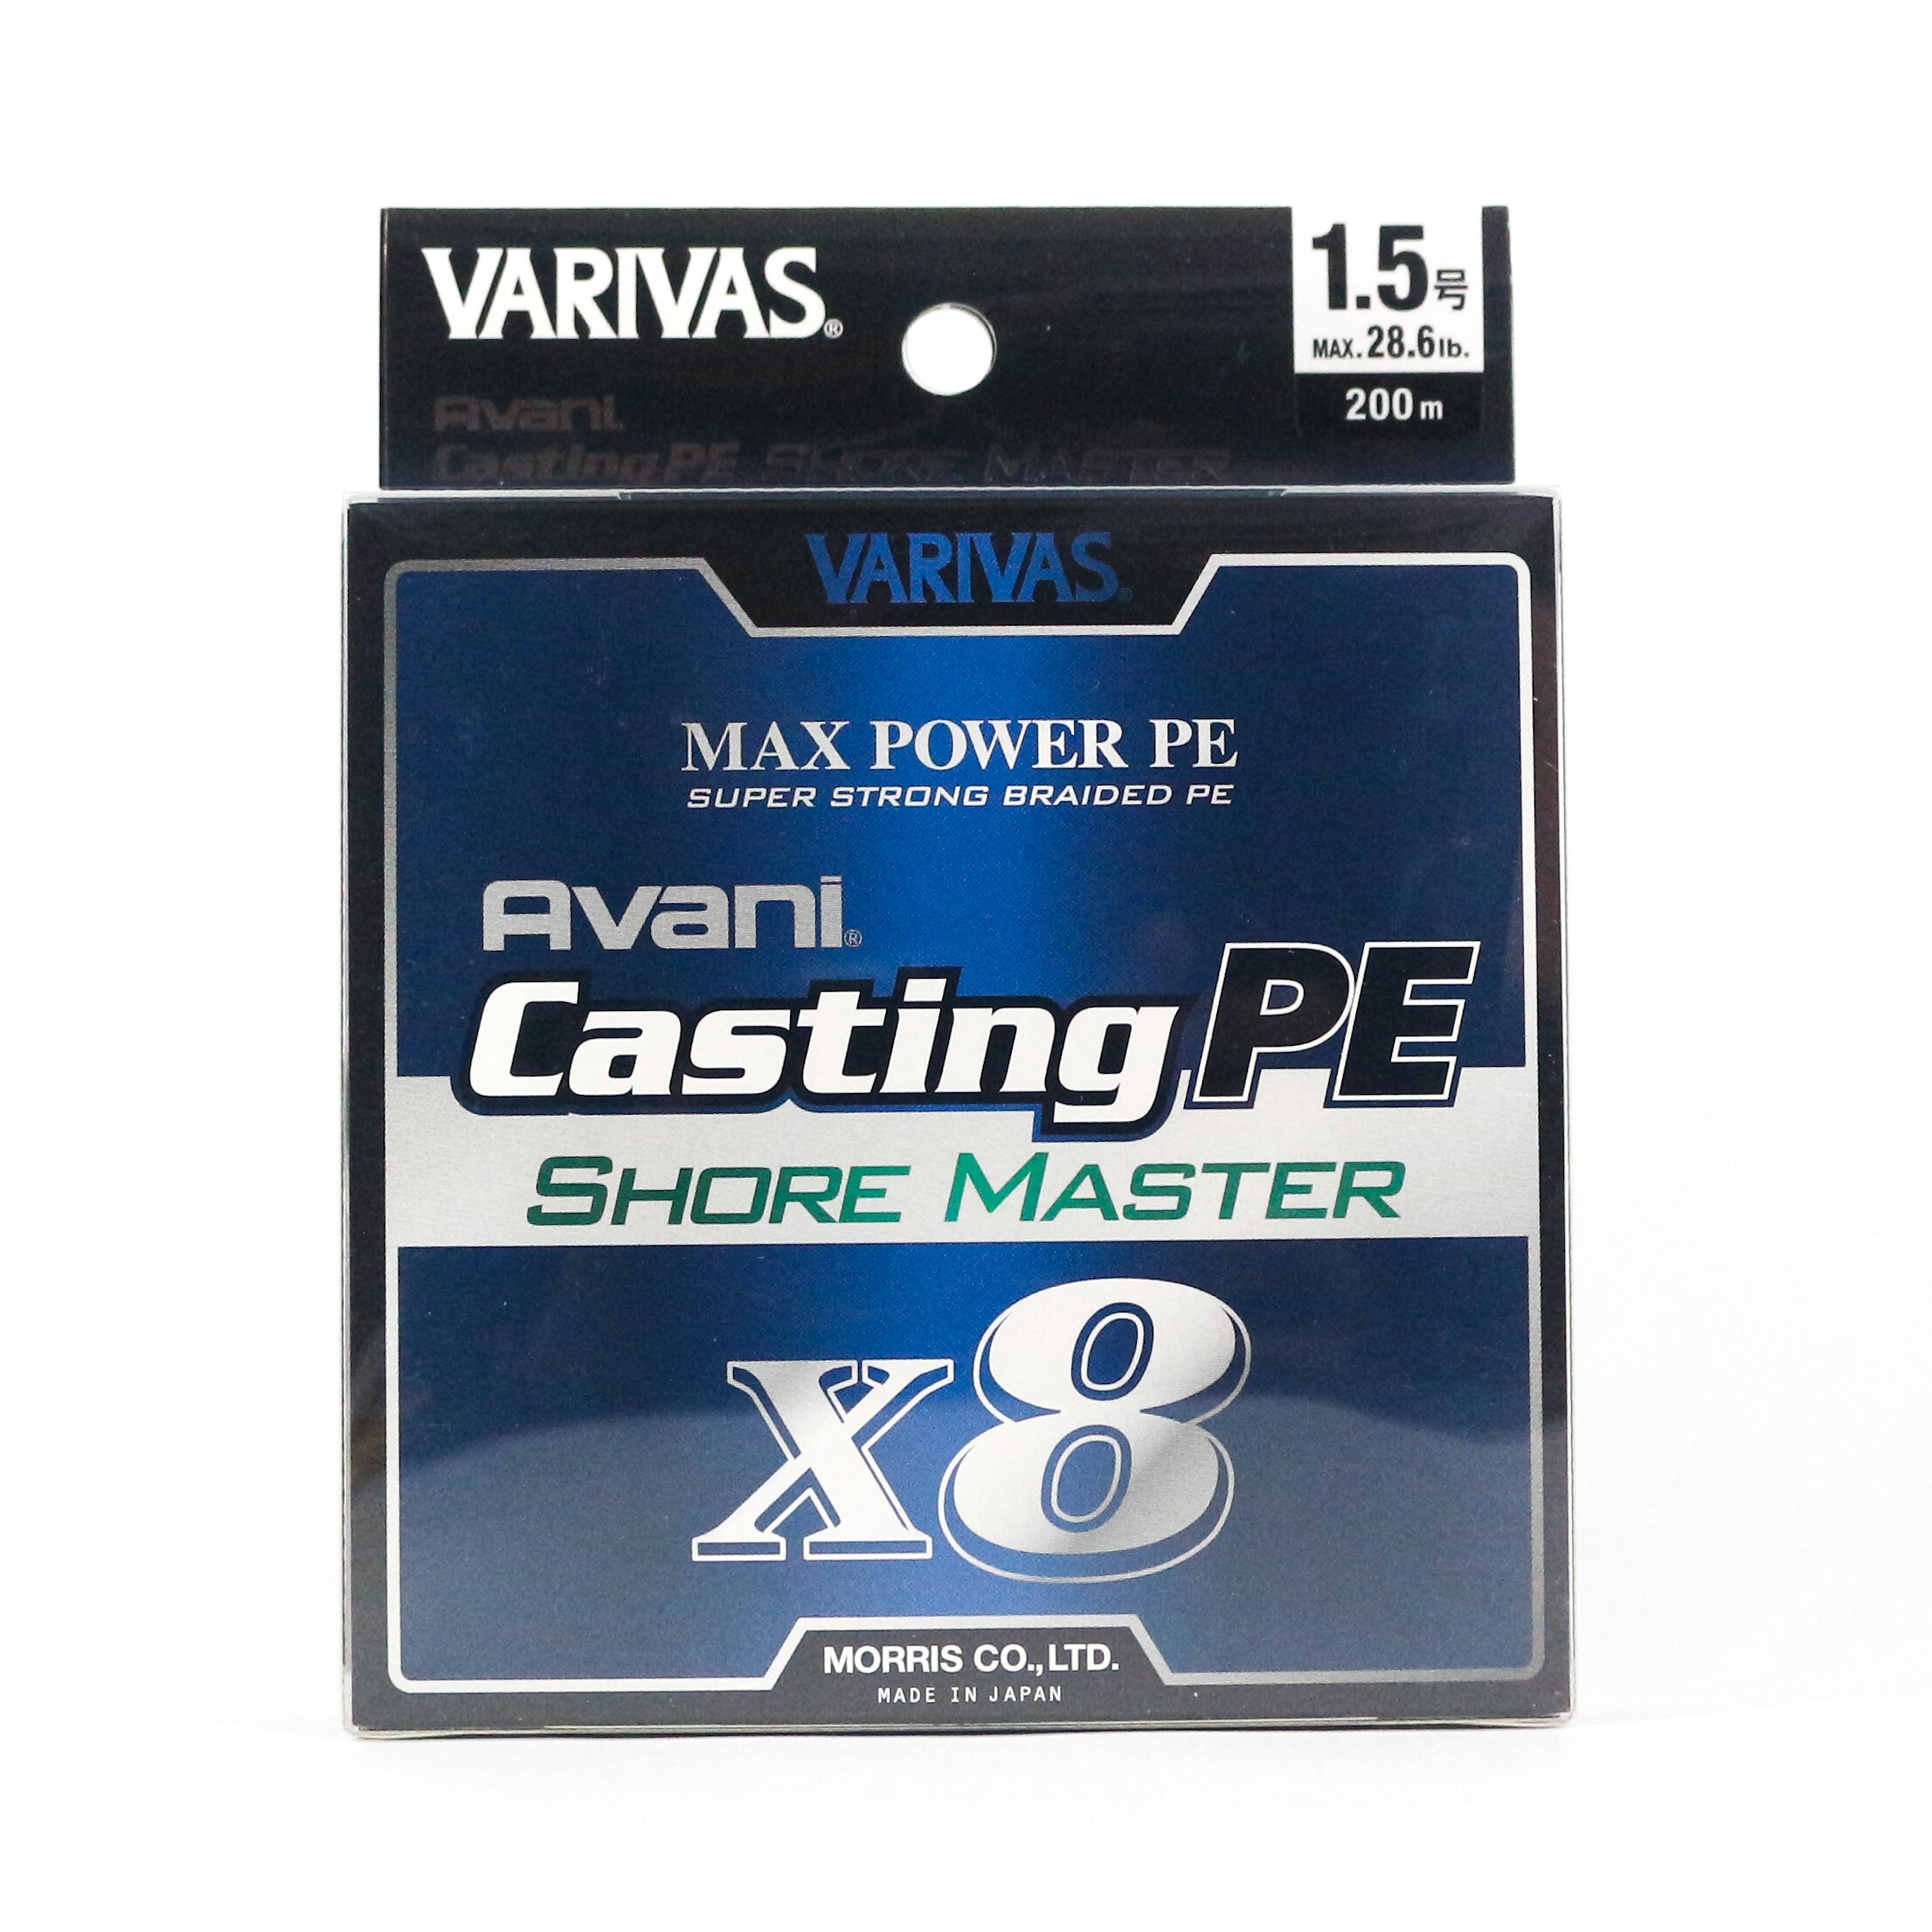 8555 Varivas P.E Line New Avani Max Power Casting X8 300m P.E 1.5 28.6lb 